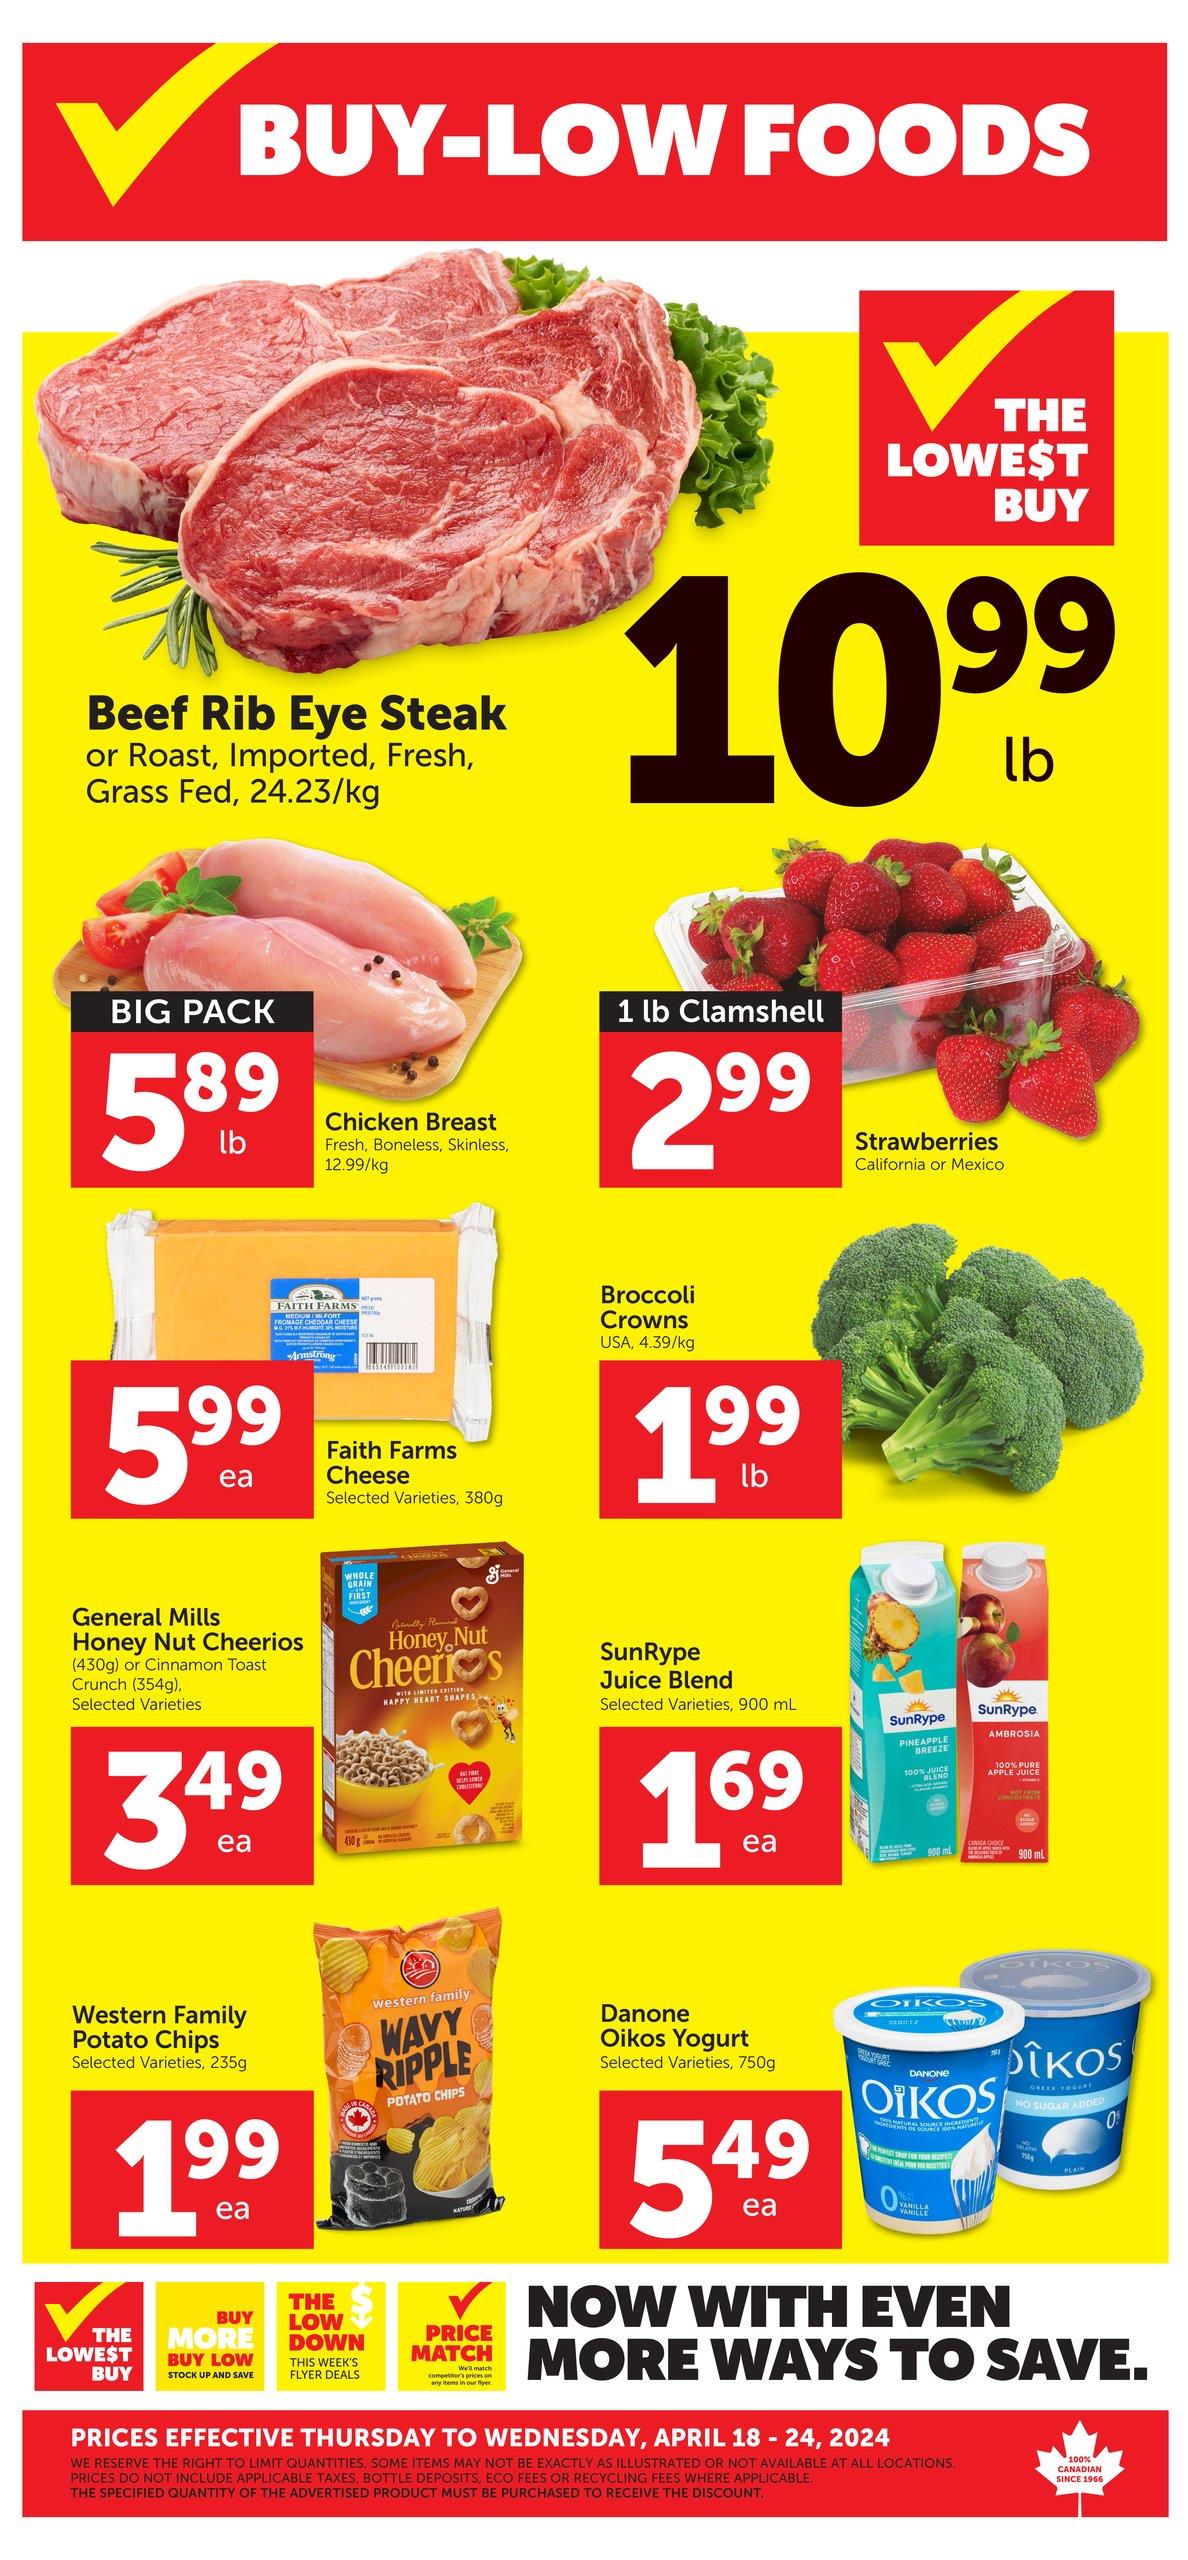 Buy-Low Foods - Weekly Flyer Specials